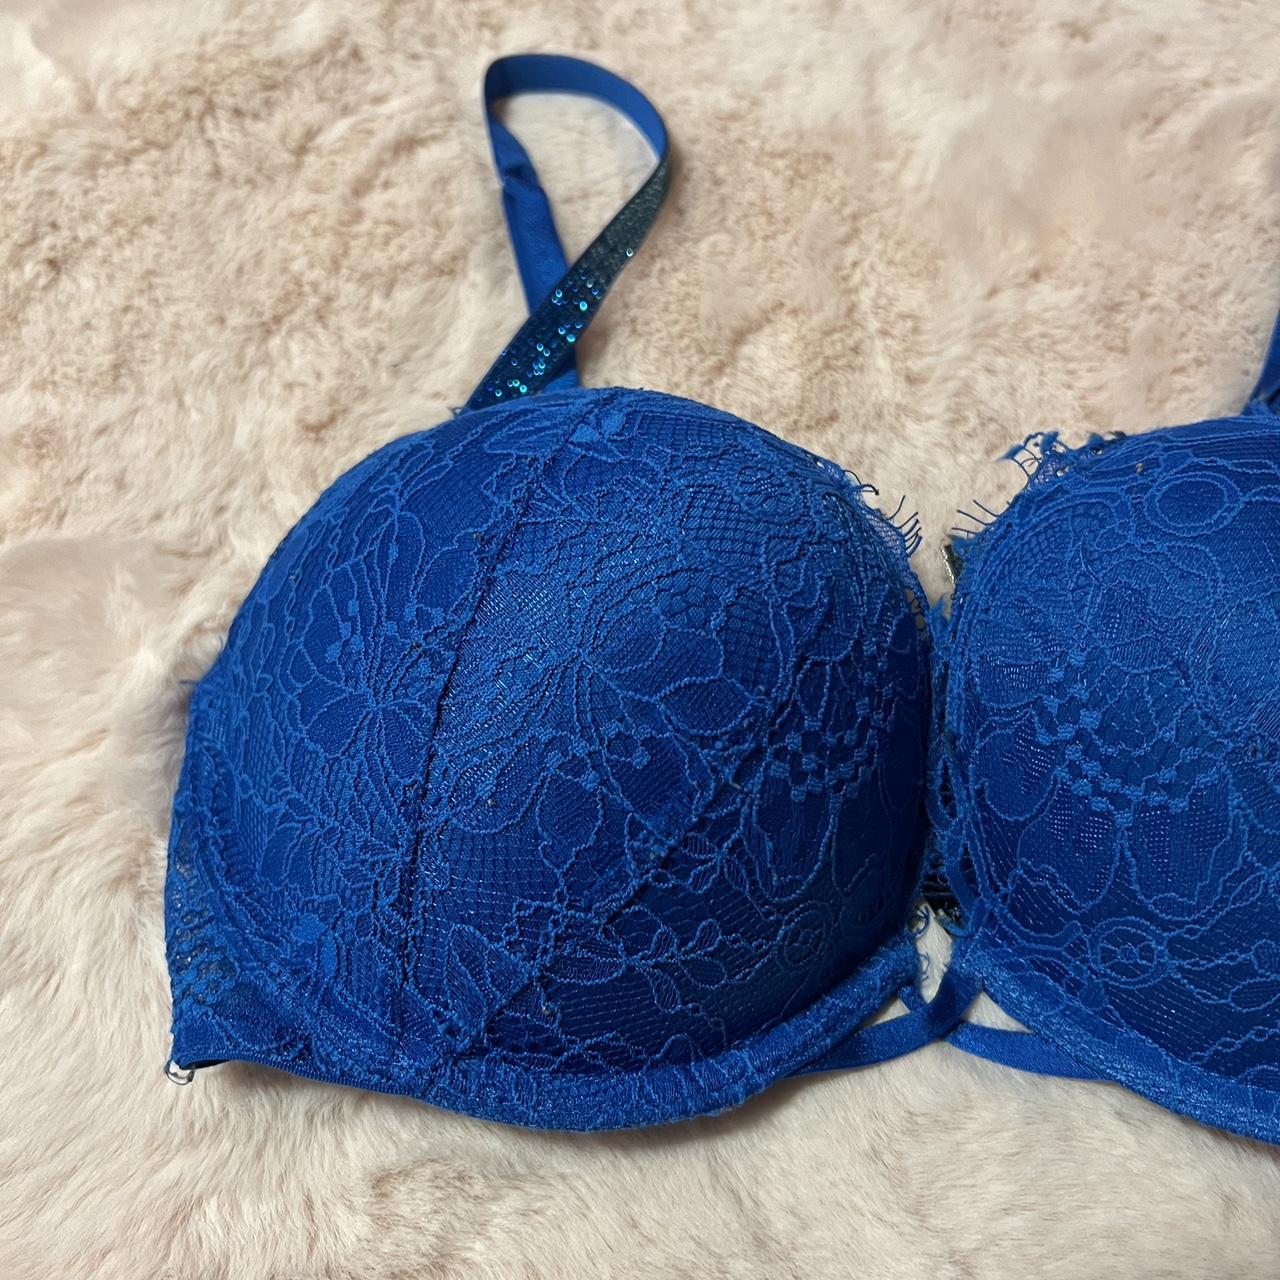 Size 34D/32DD - Victoria's Secret Blue Sparkle Bra NWOT